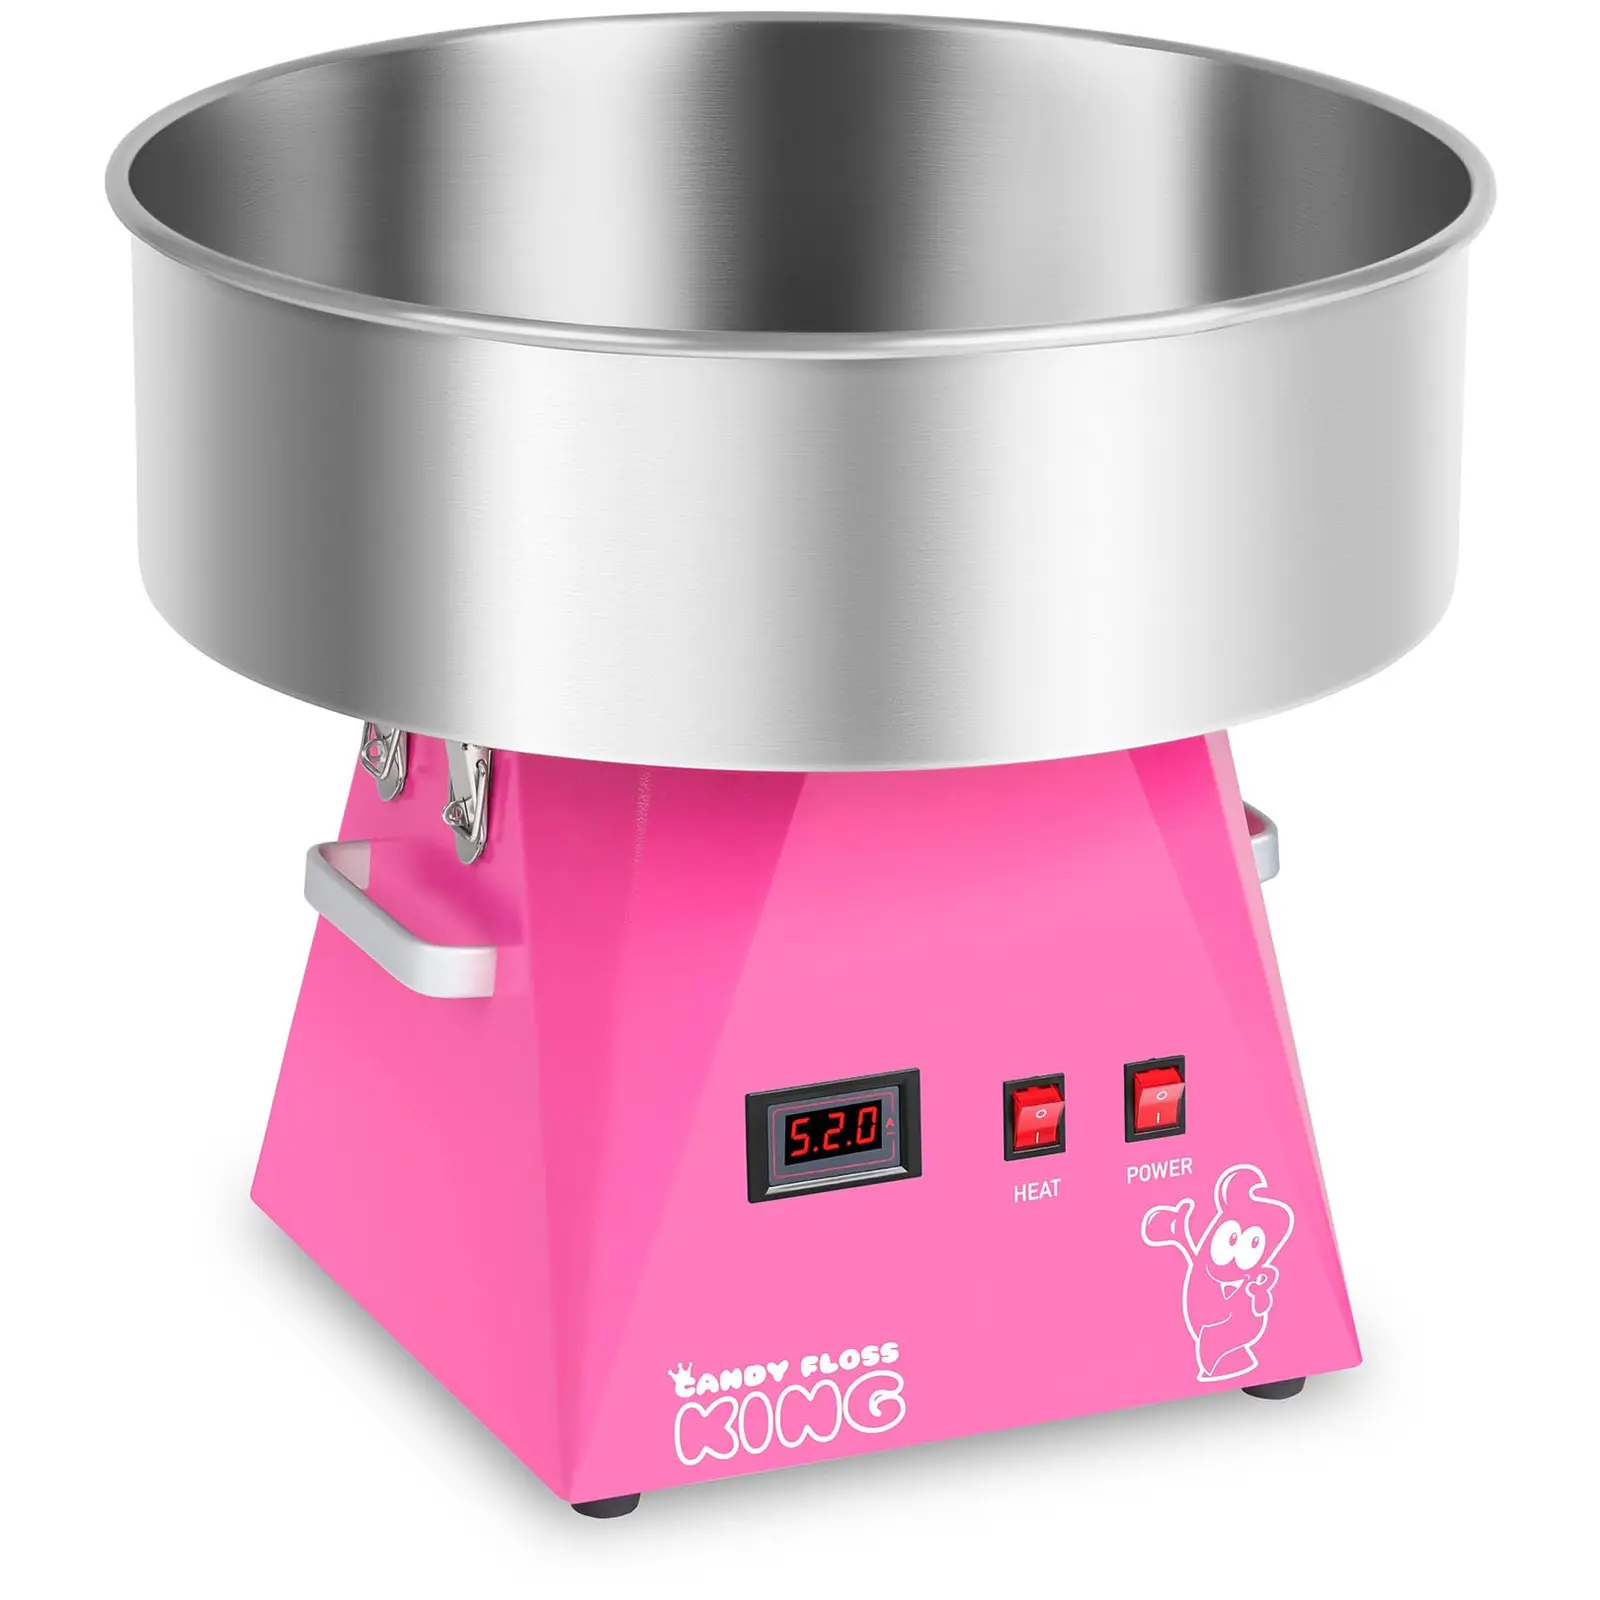 Cukraus vatos aparatas - 52 cm - rožinis